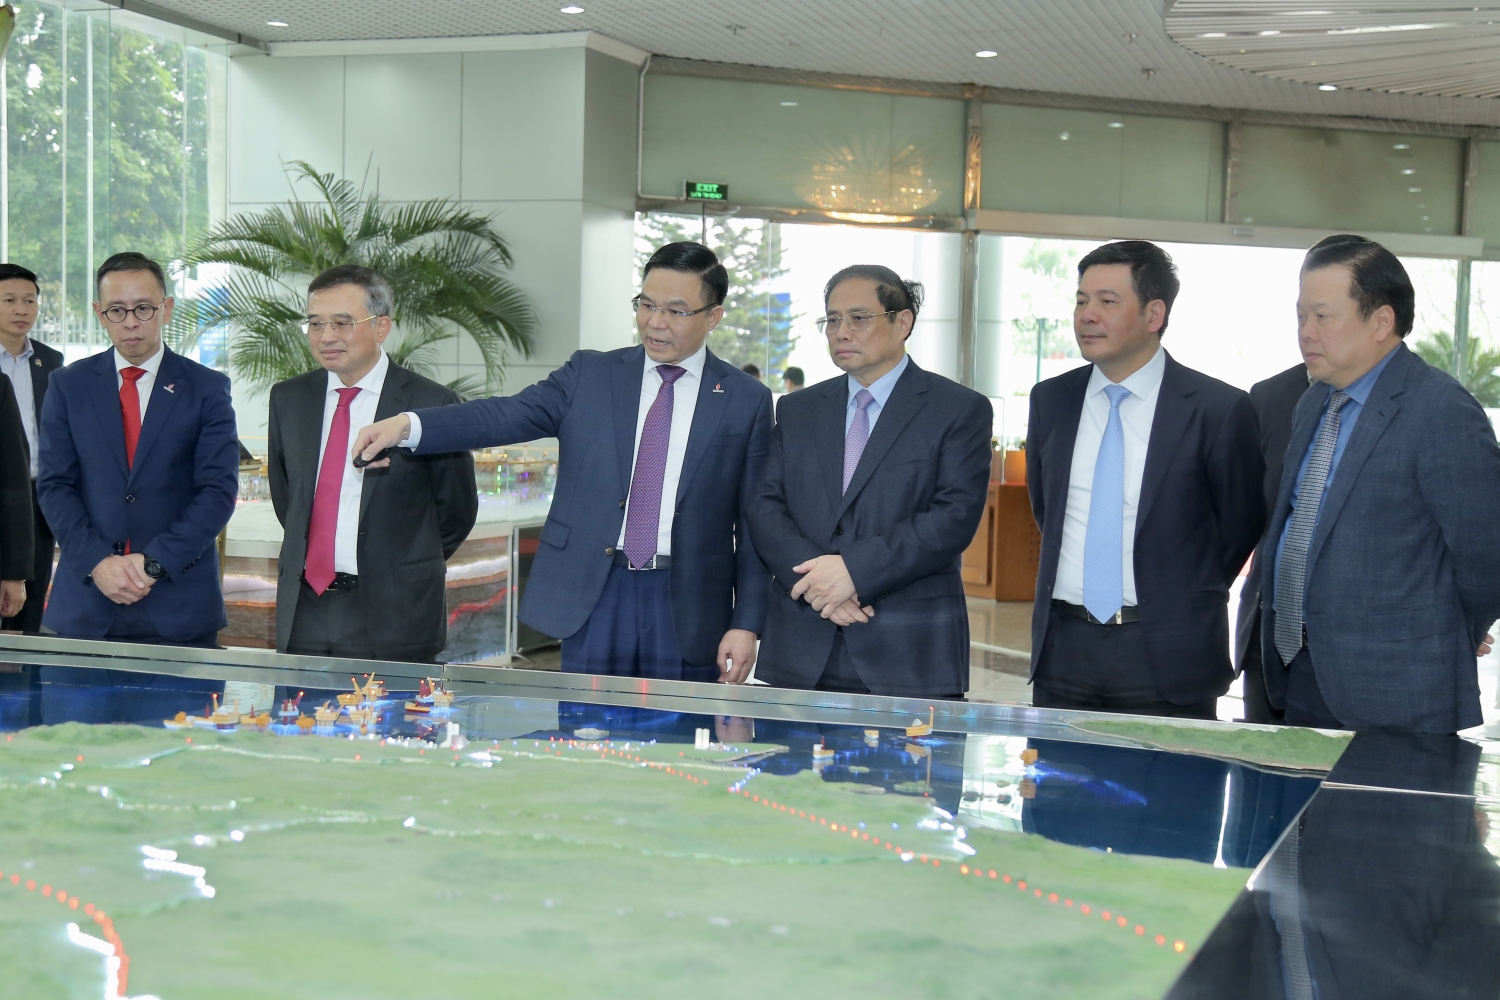 Thủ tướng Chính phủ Phạm Minh Chính dự và chỉ đạo Hội nghị tổng kết năm 2022, triển khai nhiệm vụ năm 2023 của Petrovietnam